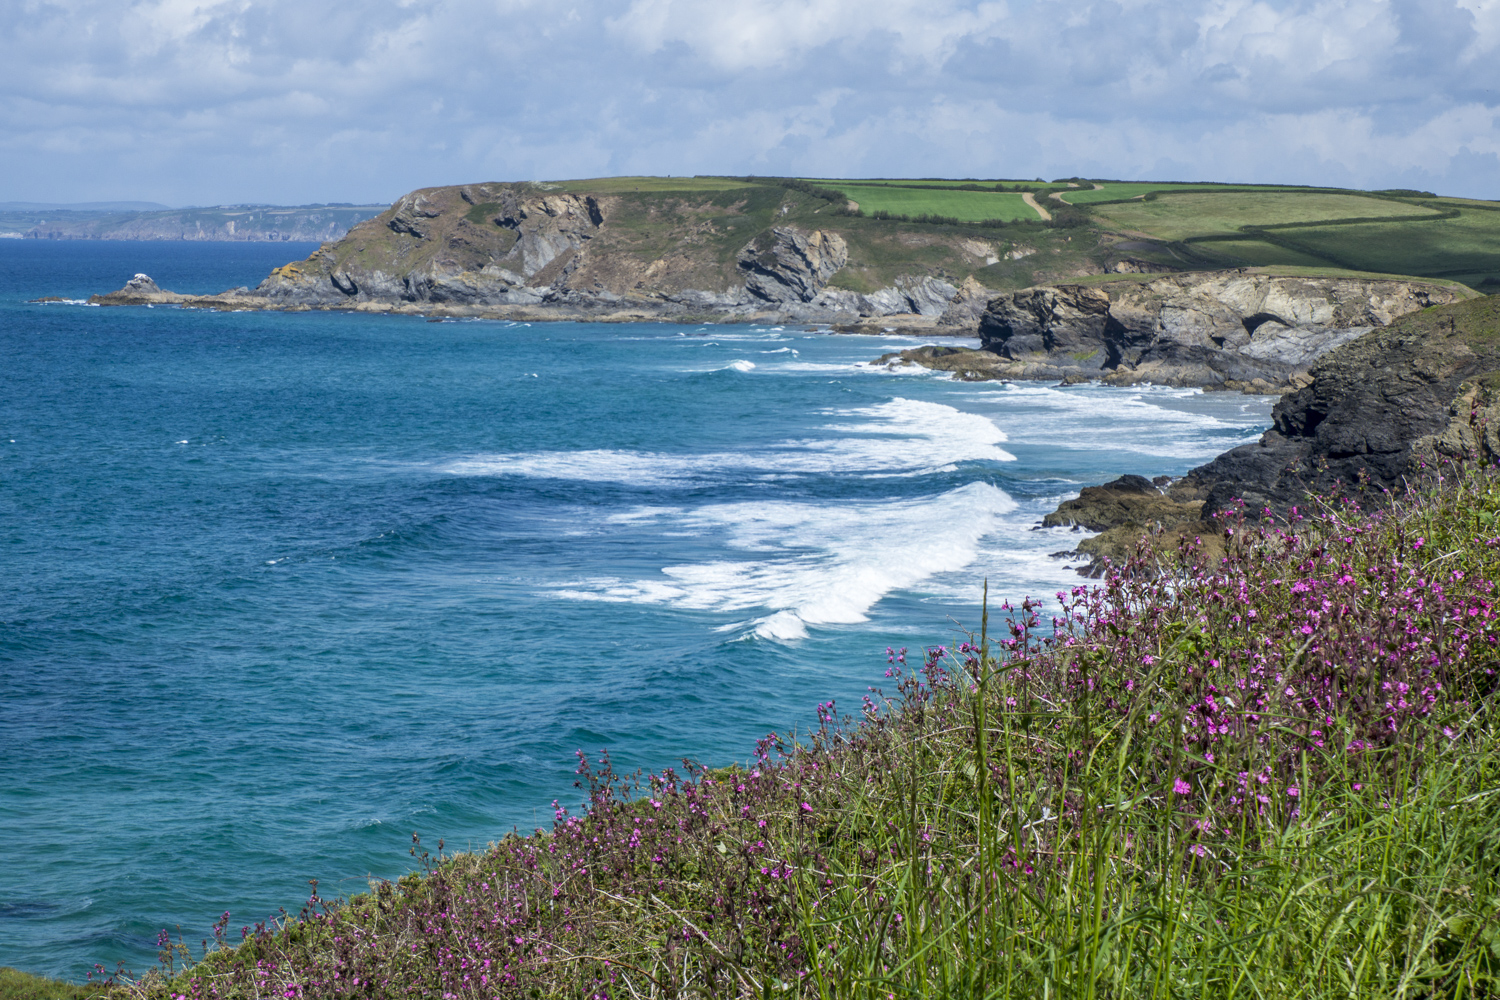 The Lizard Peninsula in Cornwall